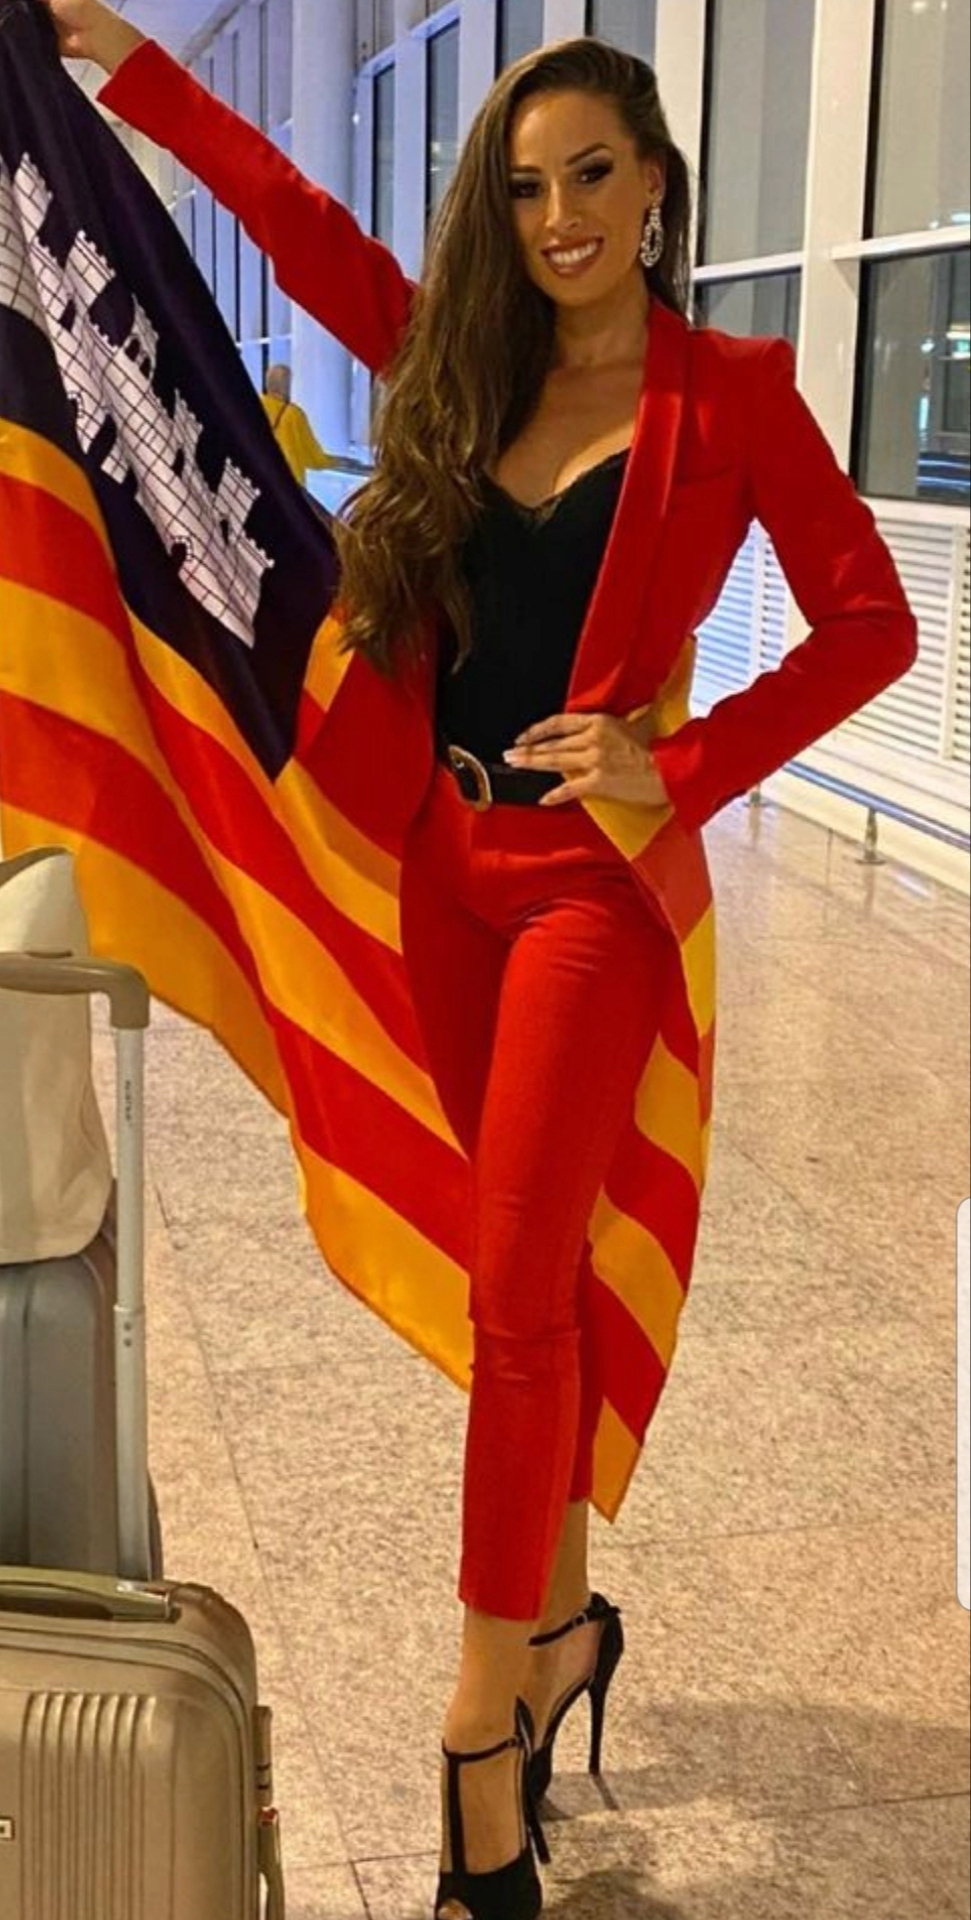 Conoce a las candidatas oficiales de Miss Universe Spain 2022. final: 10 sep. - Página 4 20220932